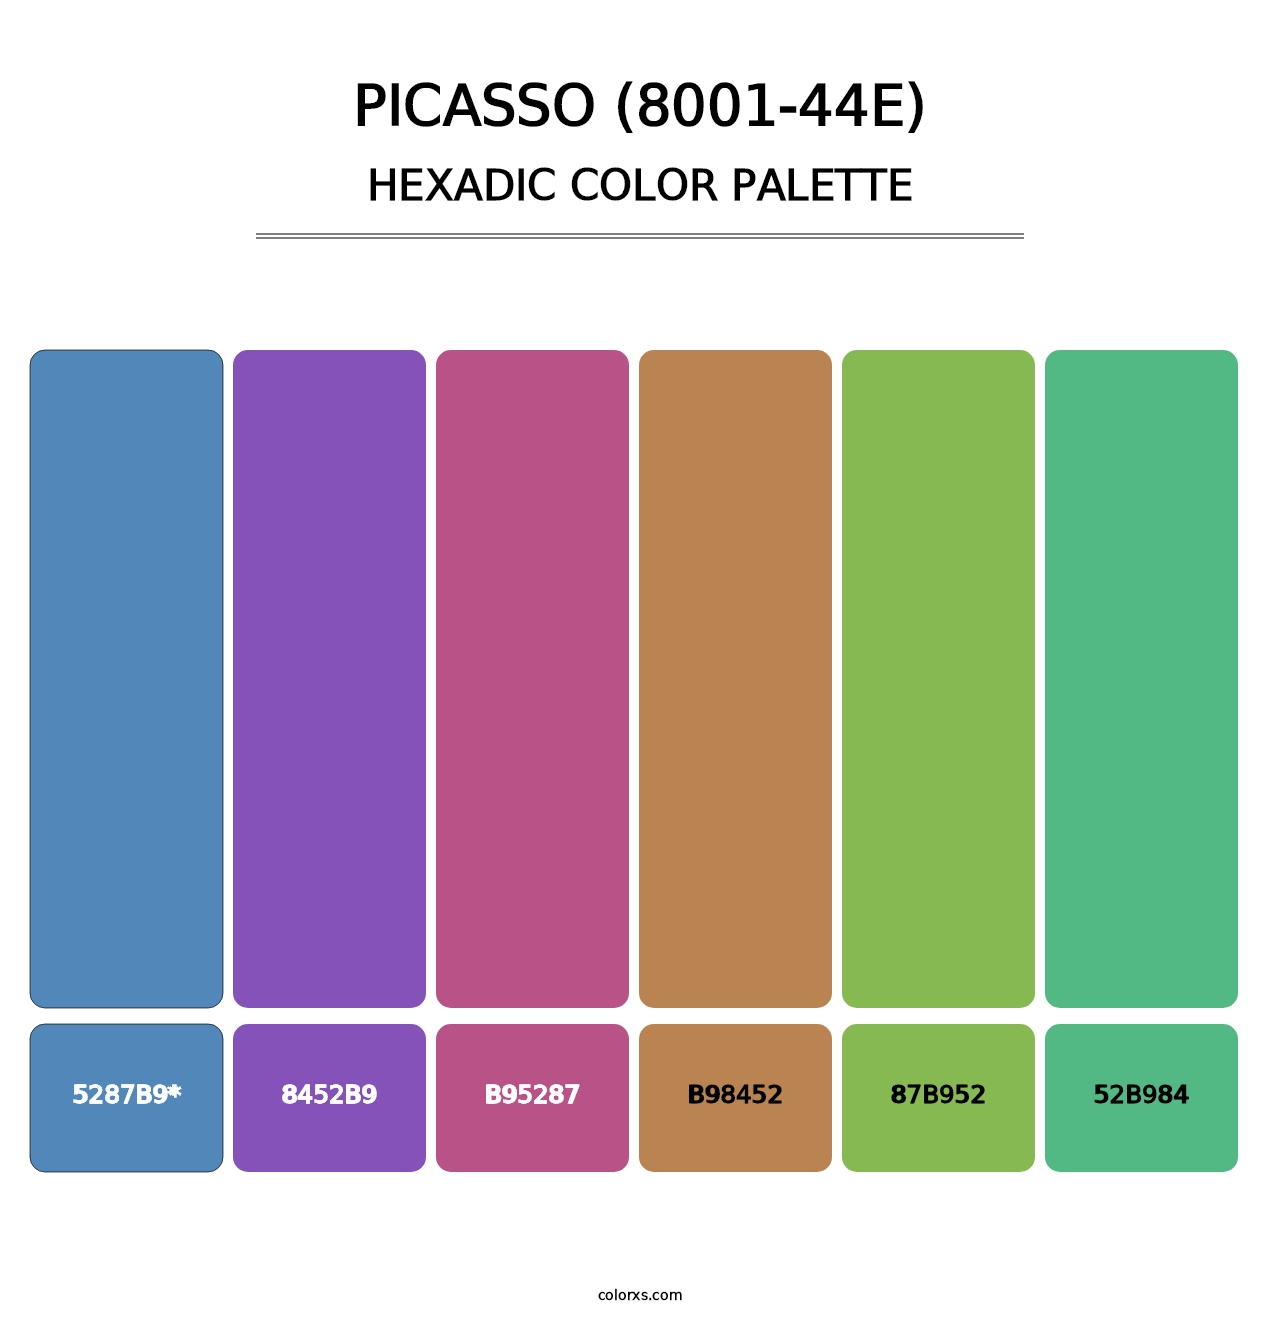 Picasso (8001-44E) - Hexadic Color Palette